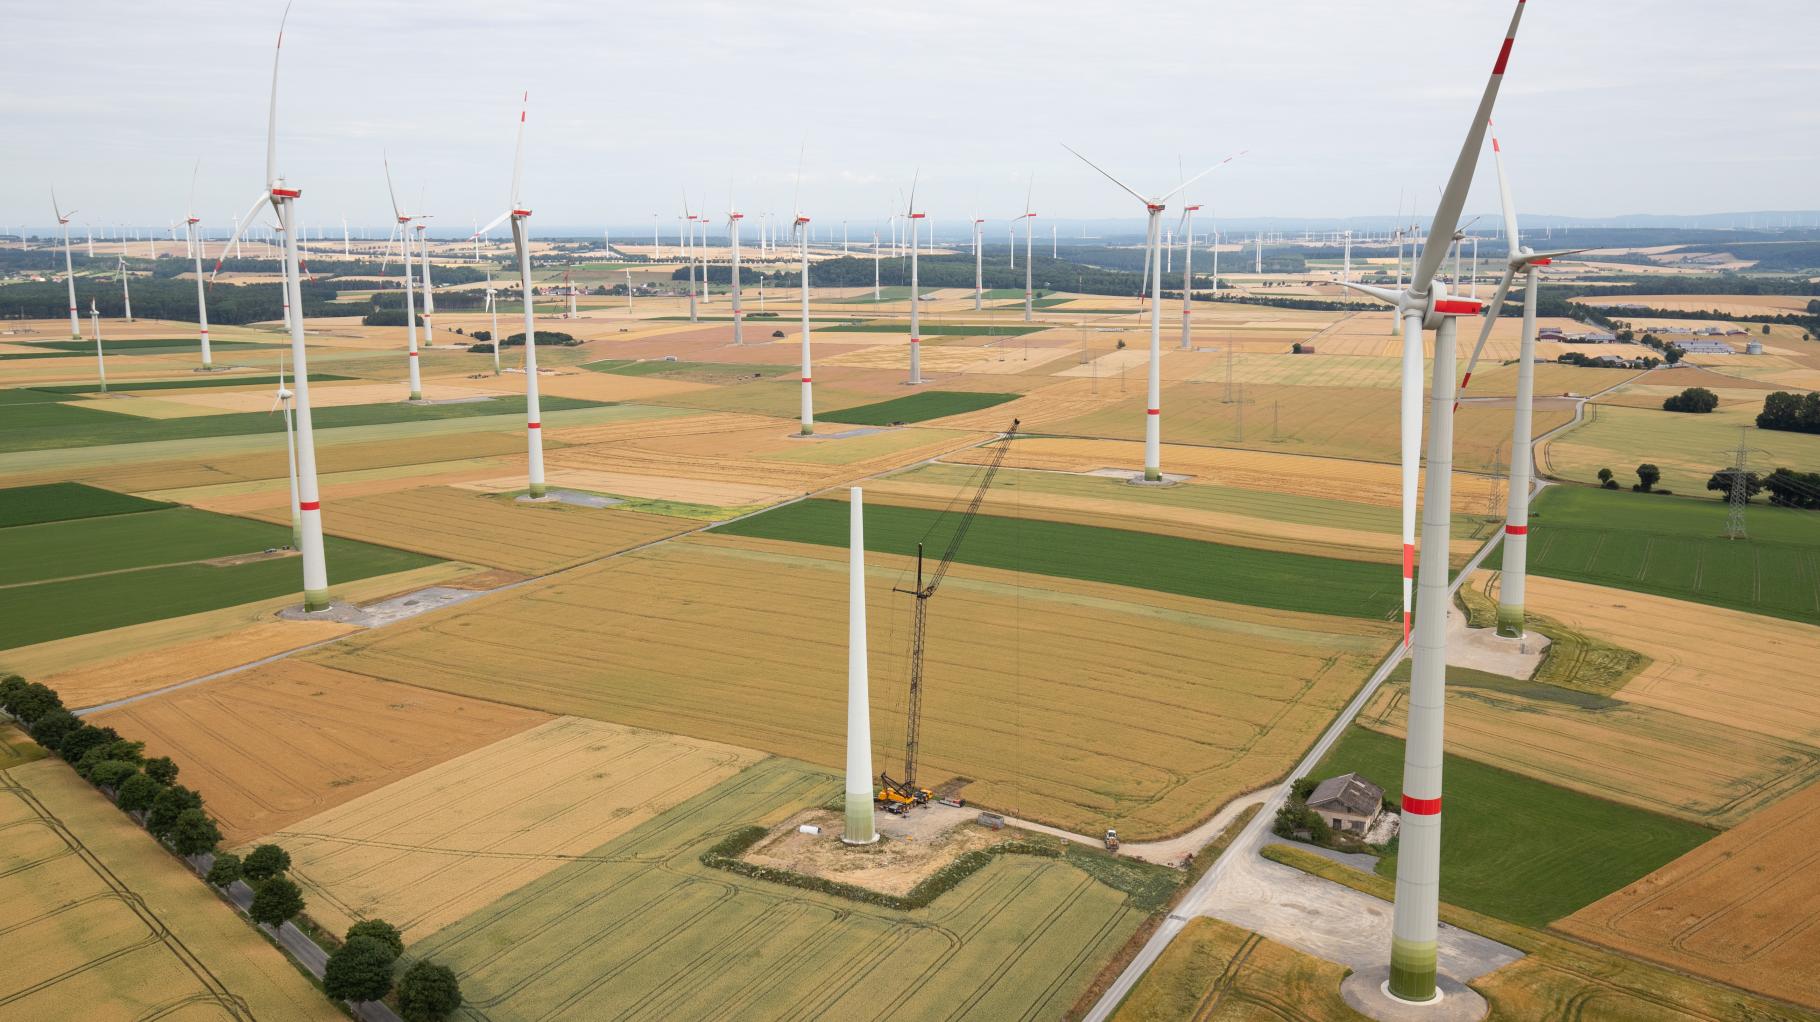 In Niedersachsen stehen bereits 6400 Windräder – wie viele noch, Herr Minister?